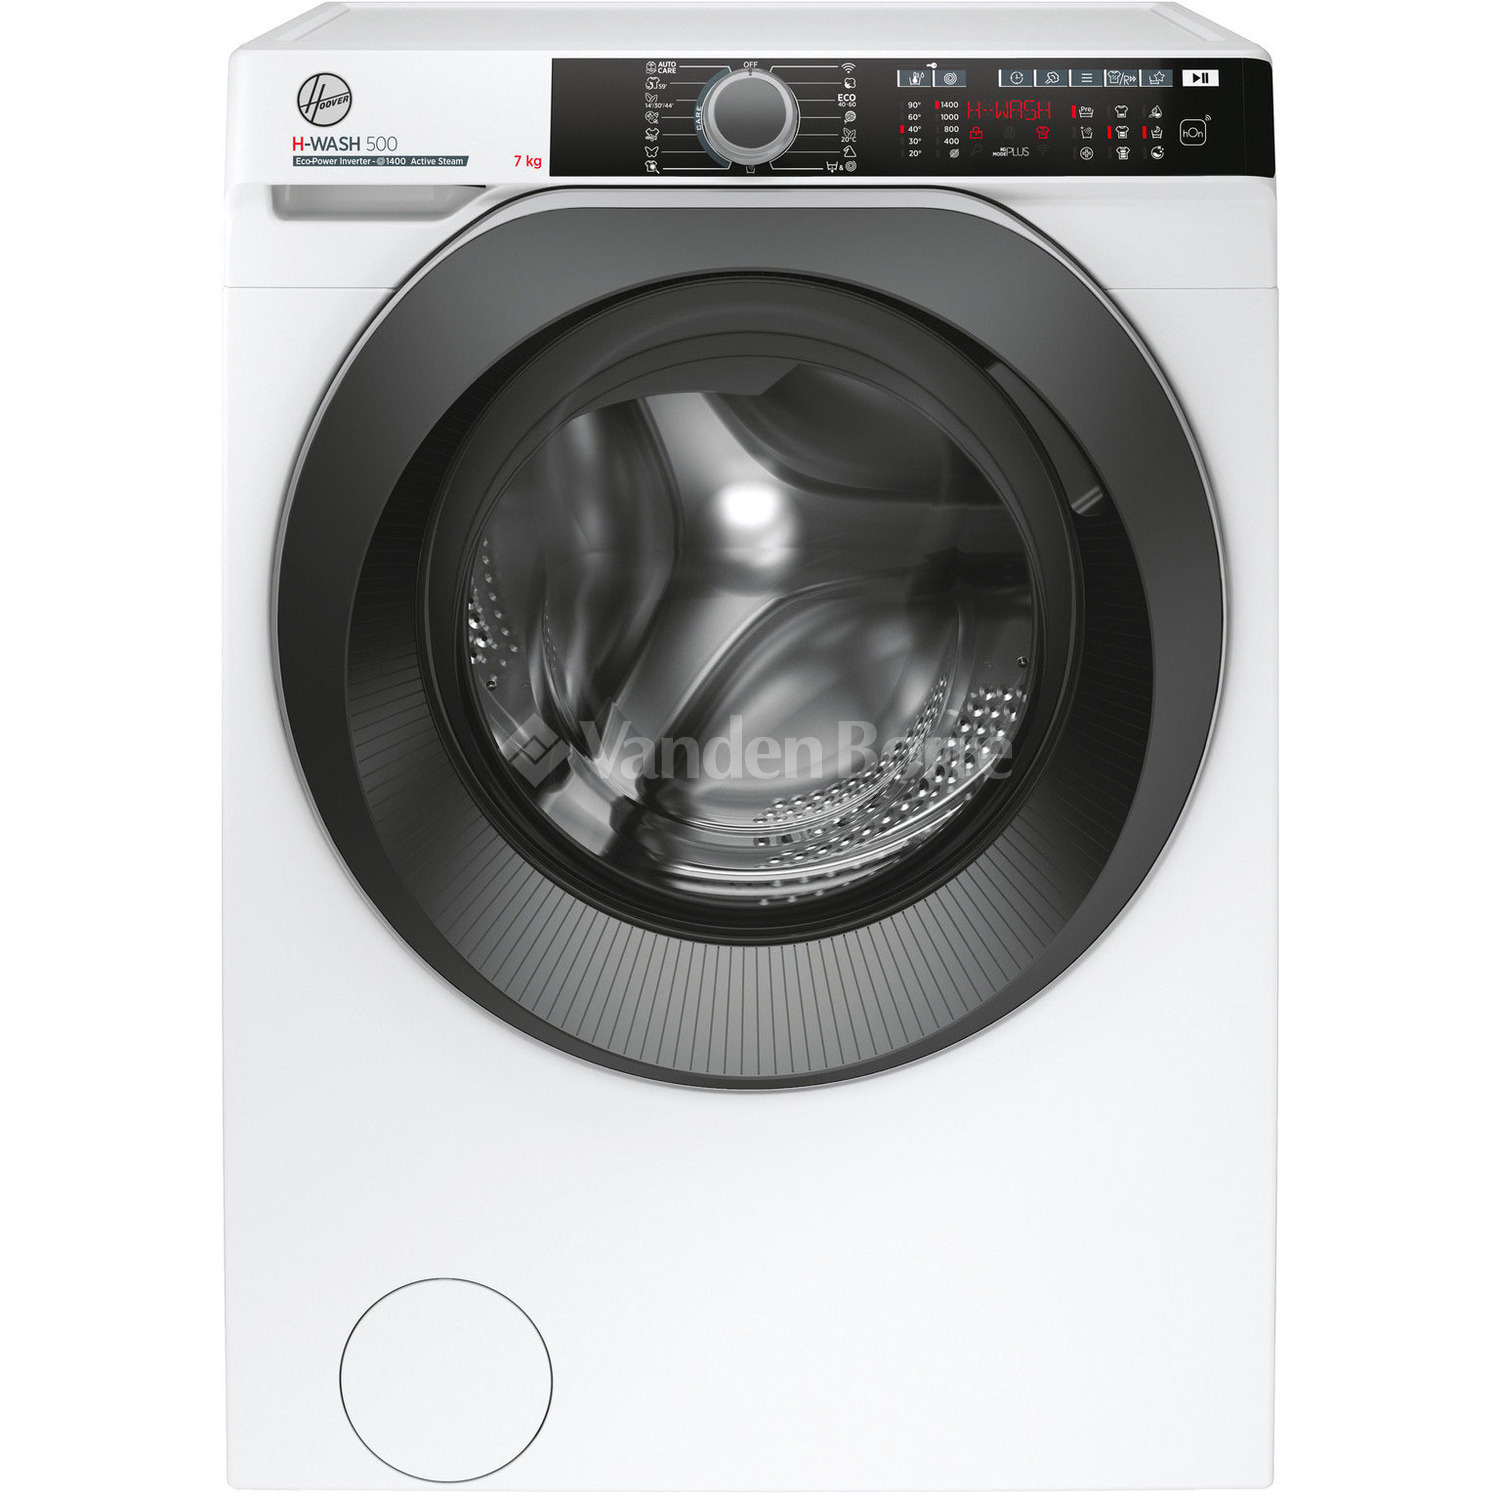 Een effectief een andere Rationalisatie Wasmachines | Vanden Borre – De laagste prijs